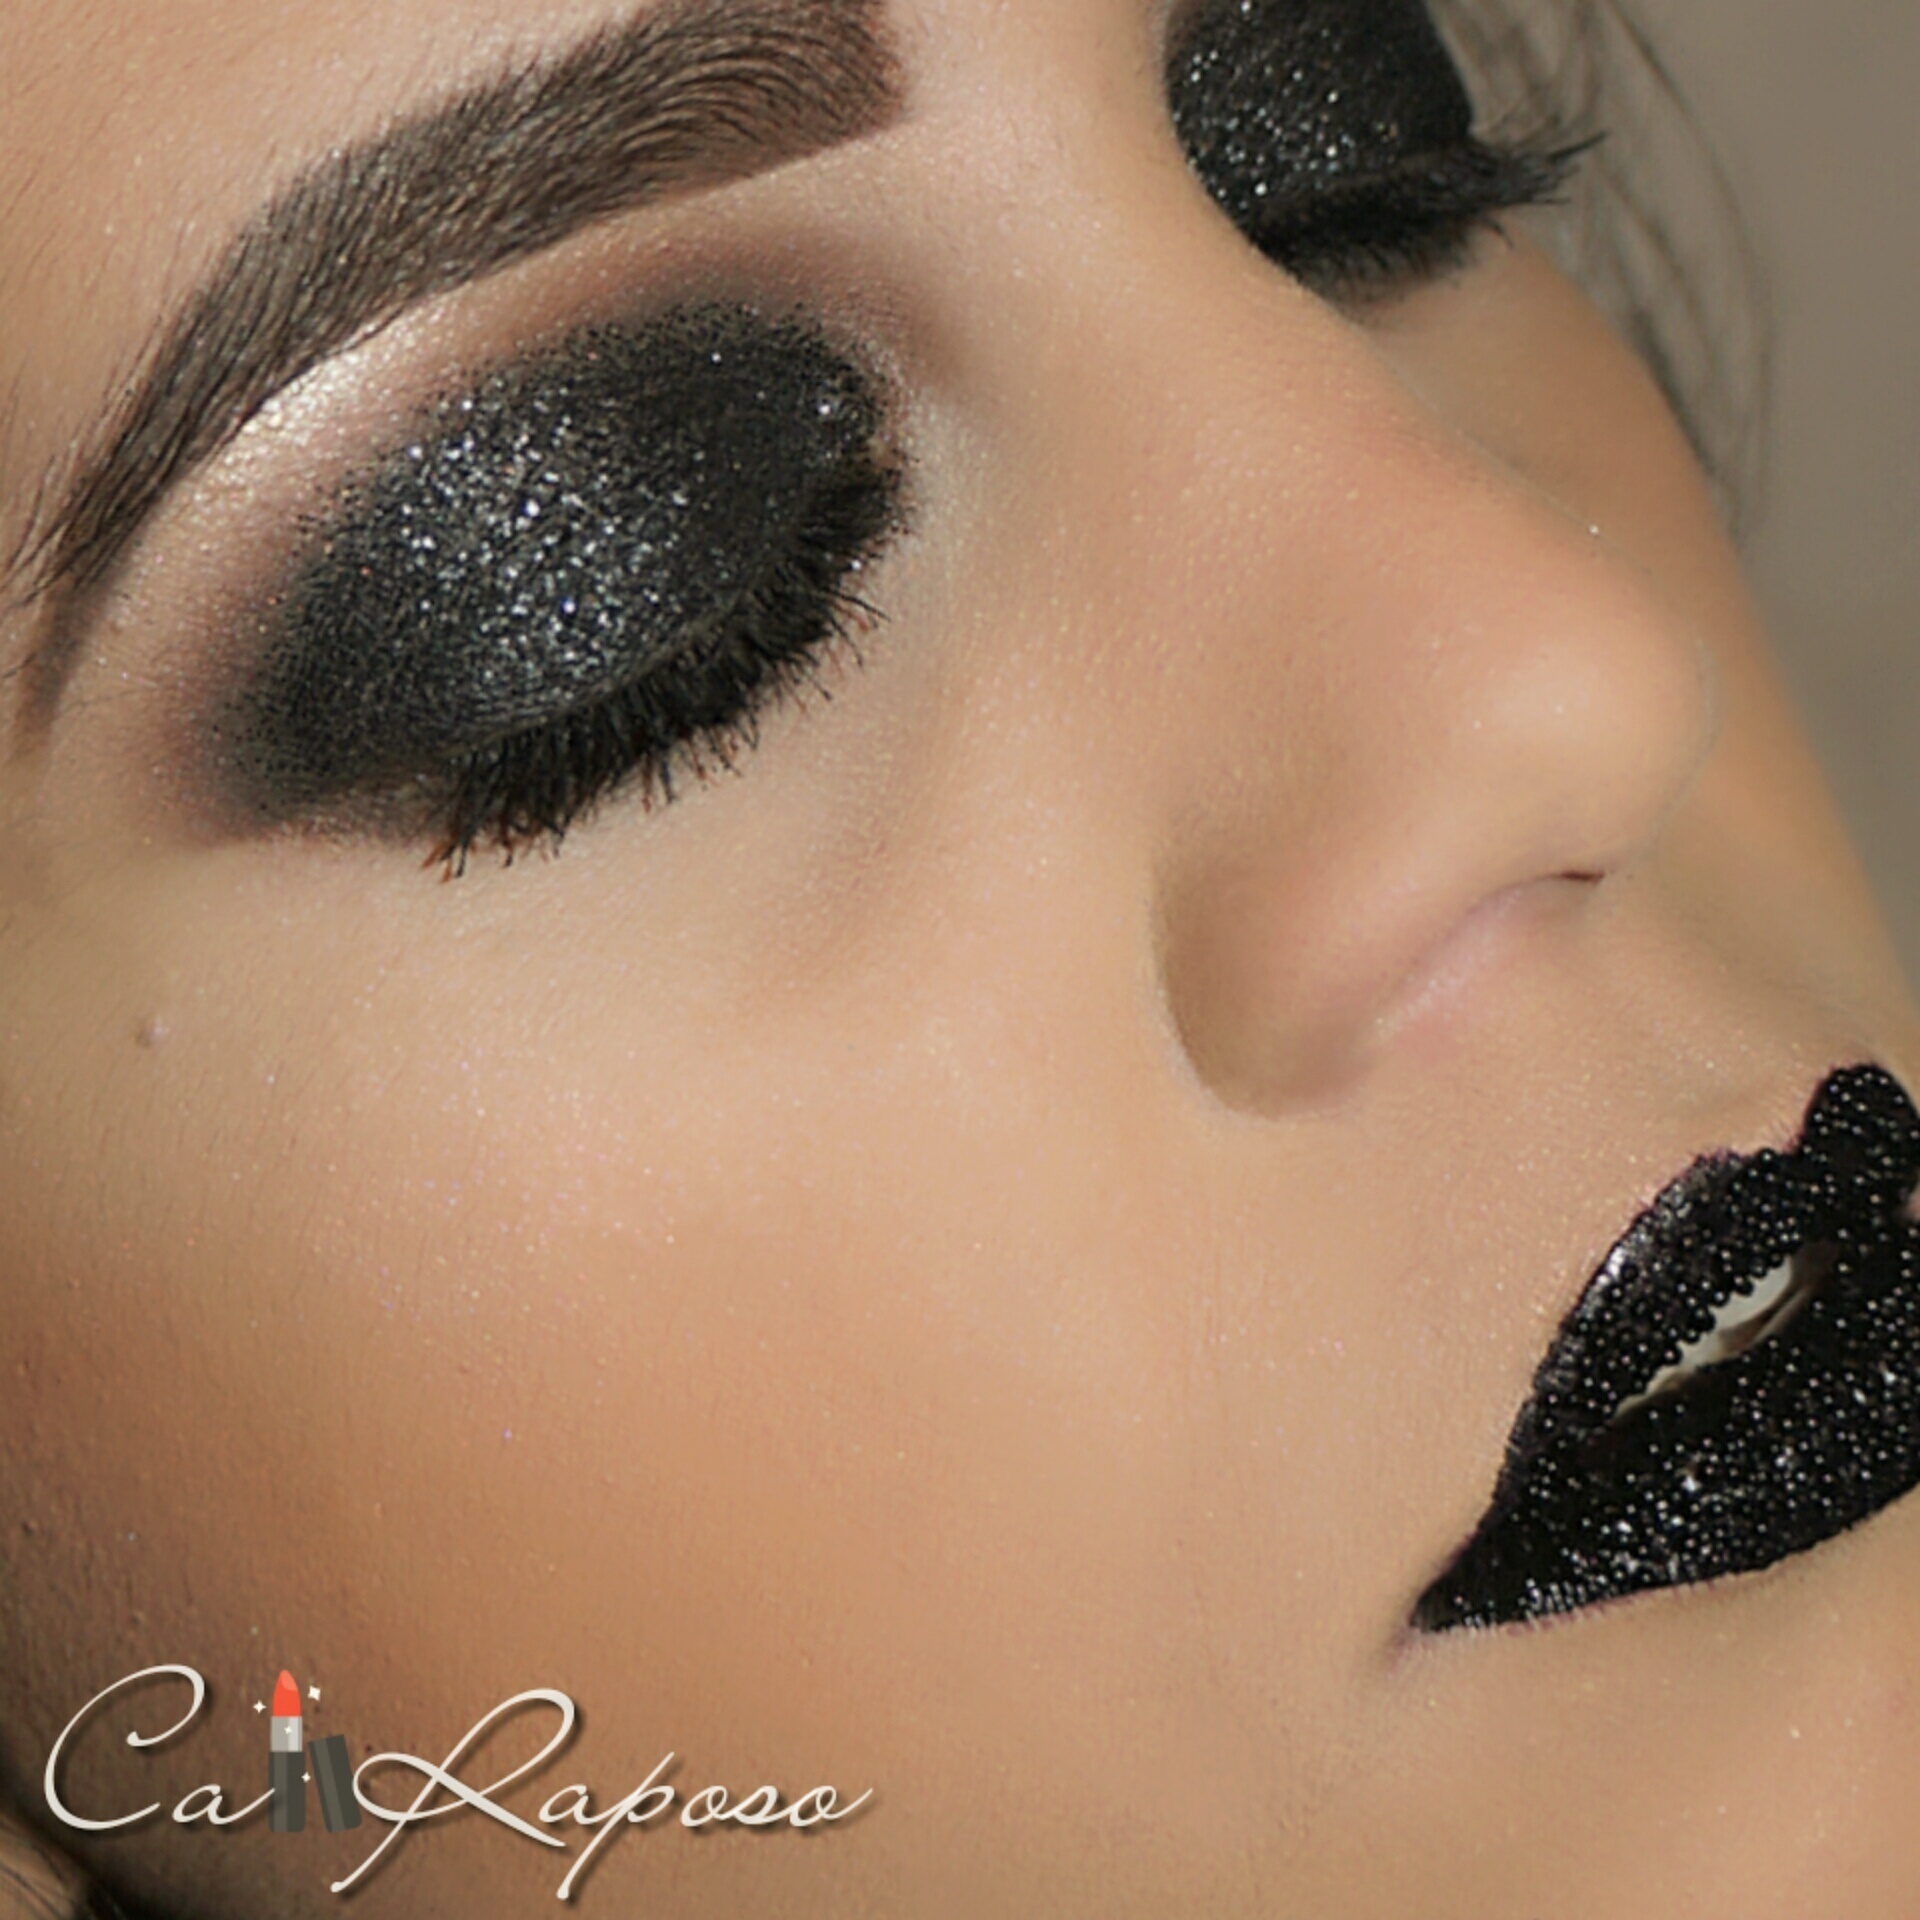 Maquiagem temática para noite.
Smokey black com glitter e na boca lip art caviar.
#maquiagem #makeupartist #smokeyeye #esfumado #glitter #makenoite maquiagem maquiador(a) designer de sobrancelhas